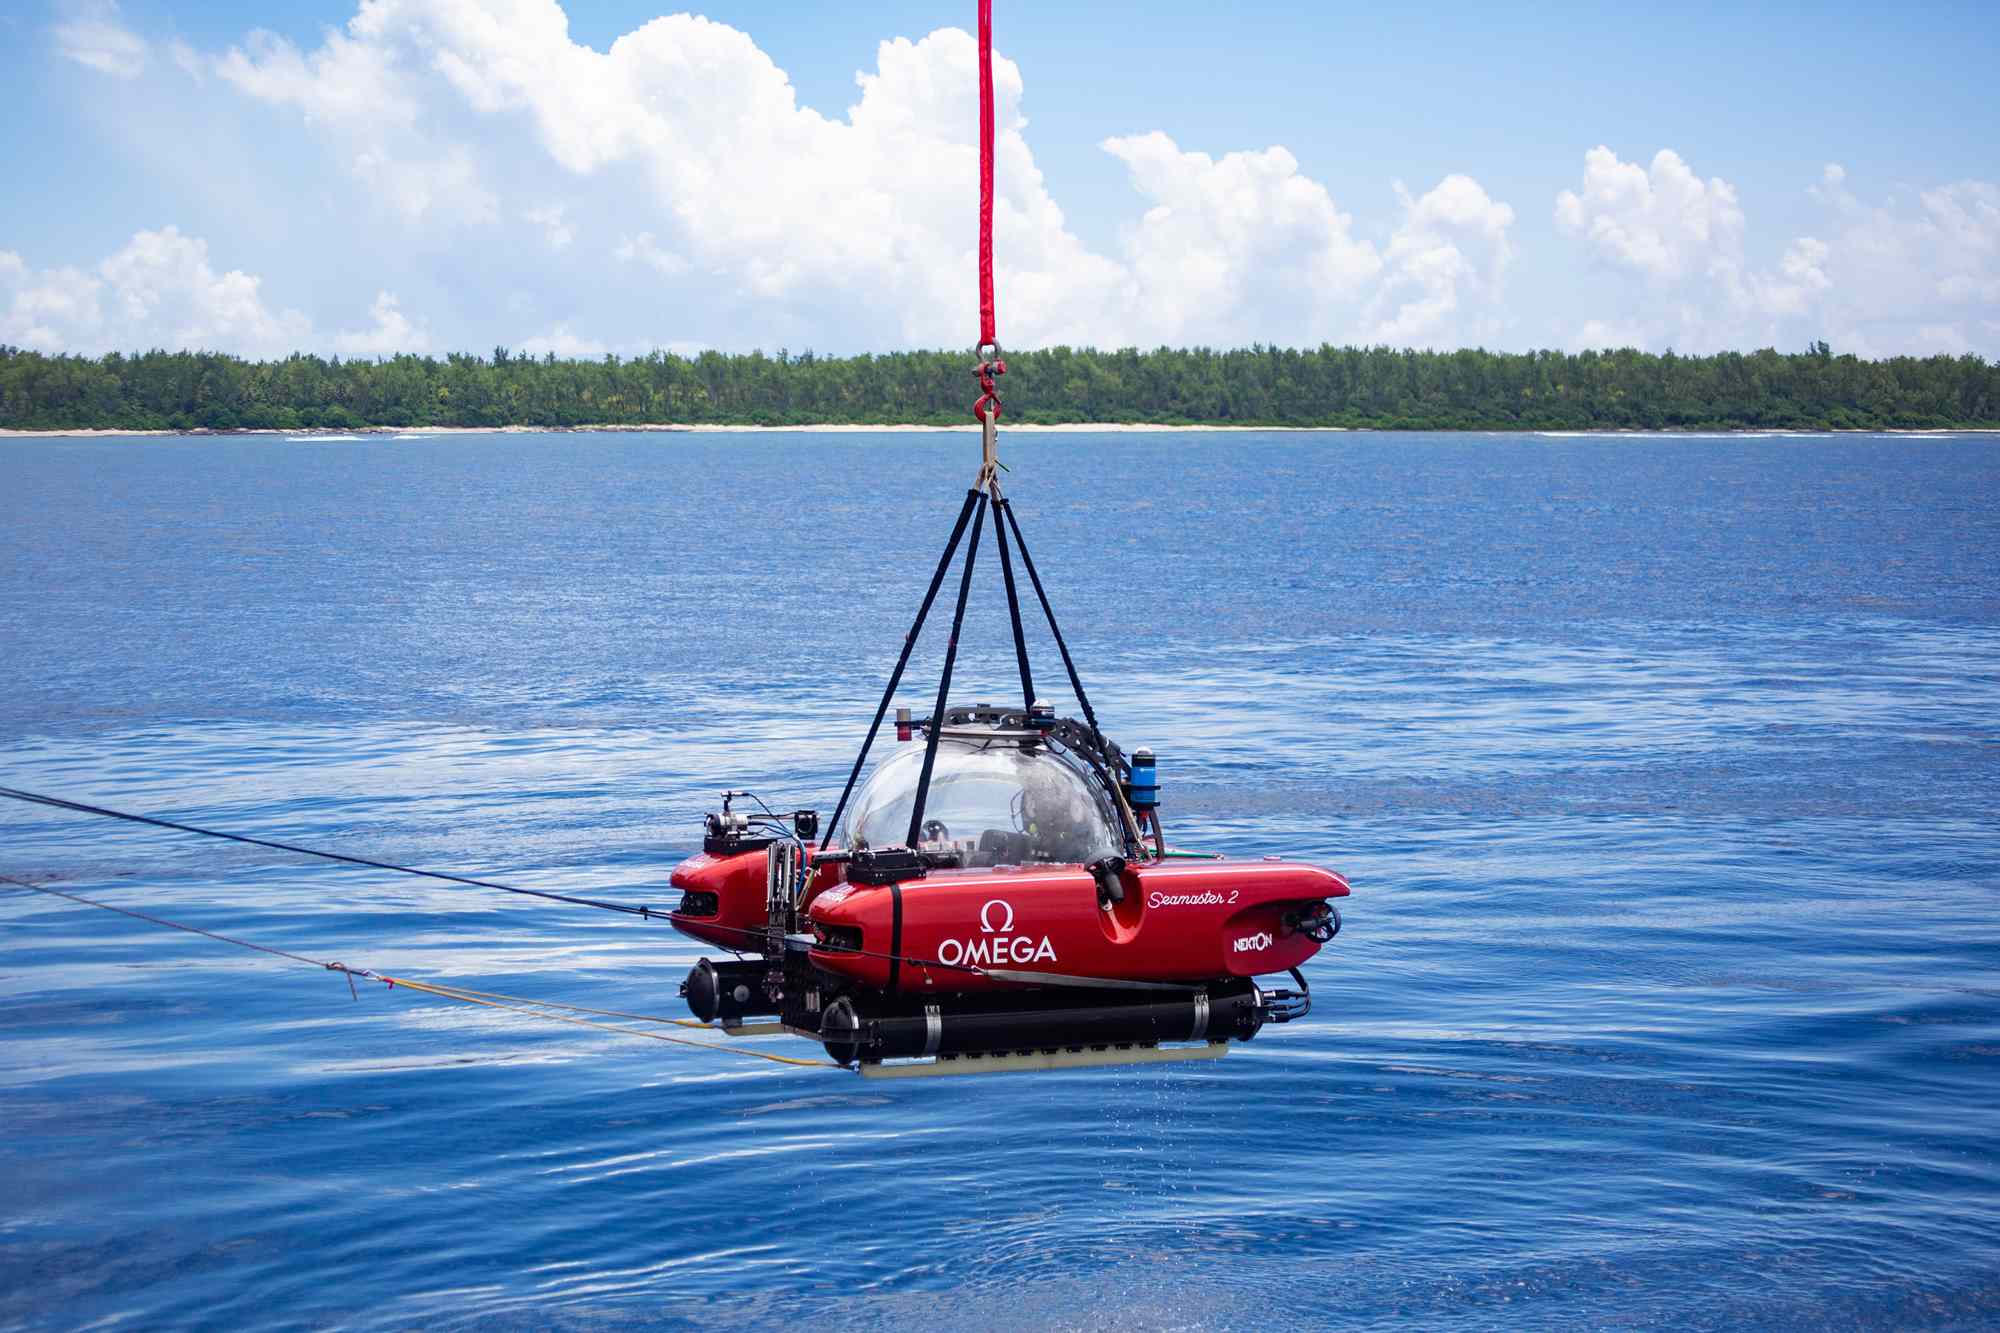 助力海洋保护——欧米茄海马系列300米潜水表Nekton特别版